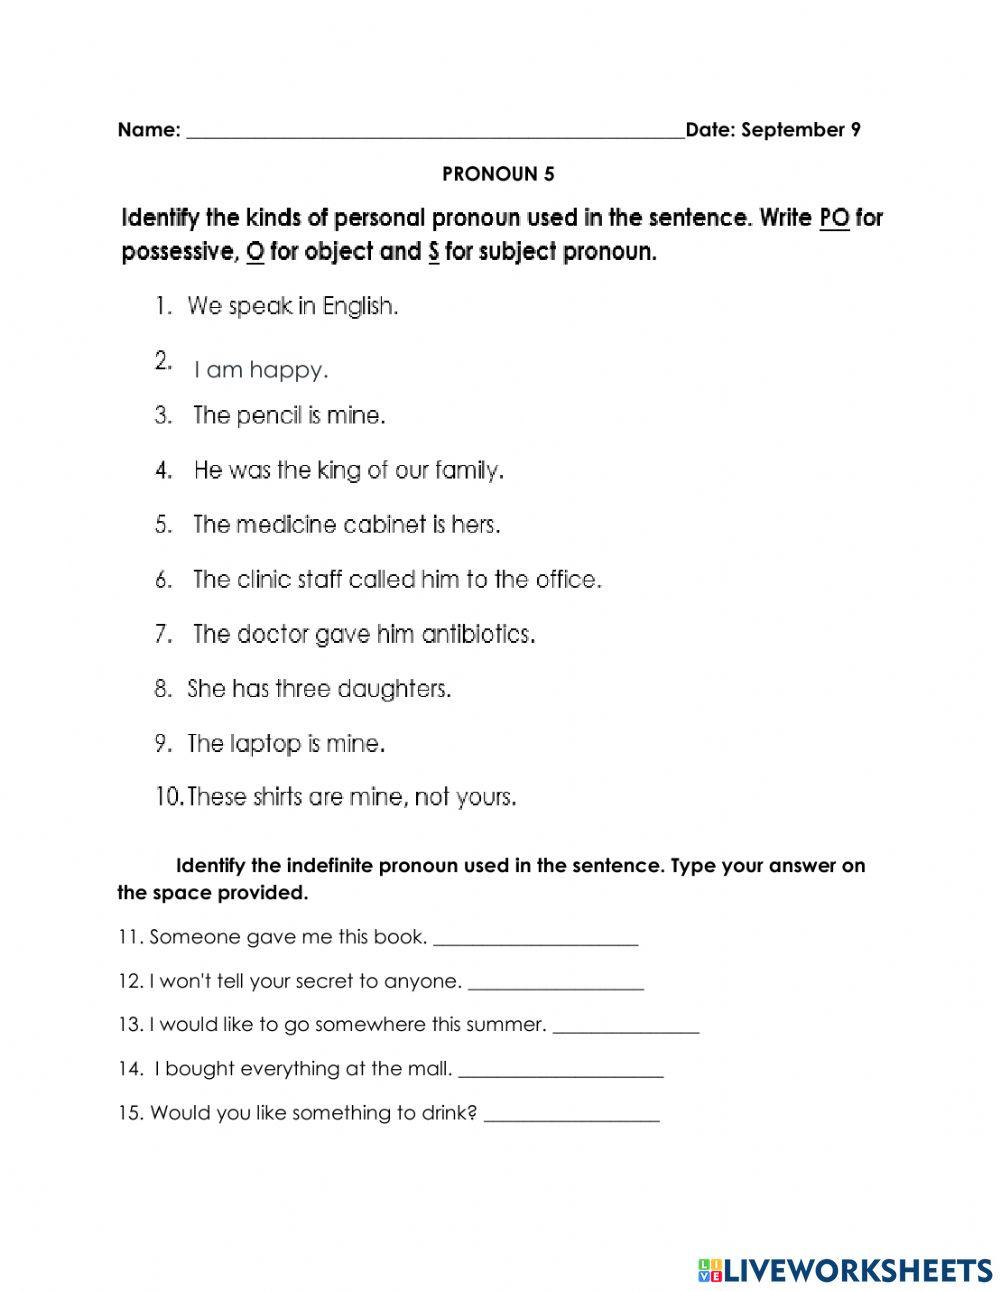 Pronoun 5 Worksheet